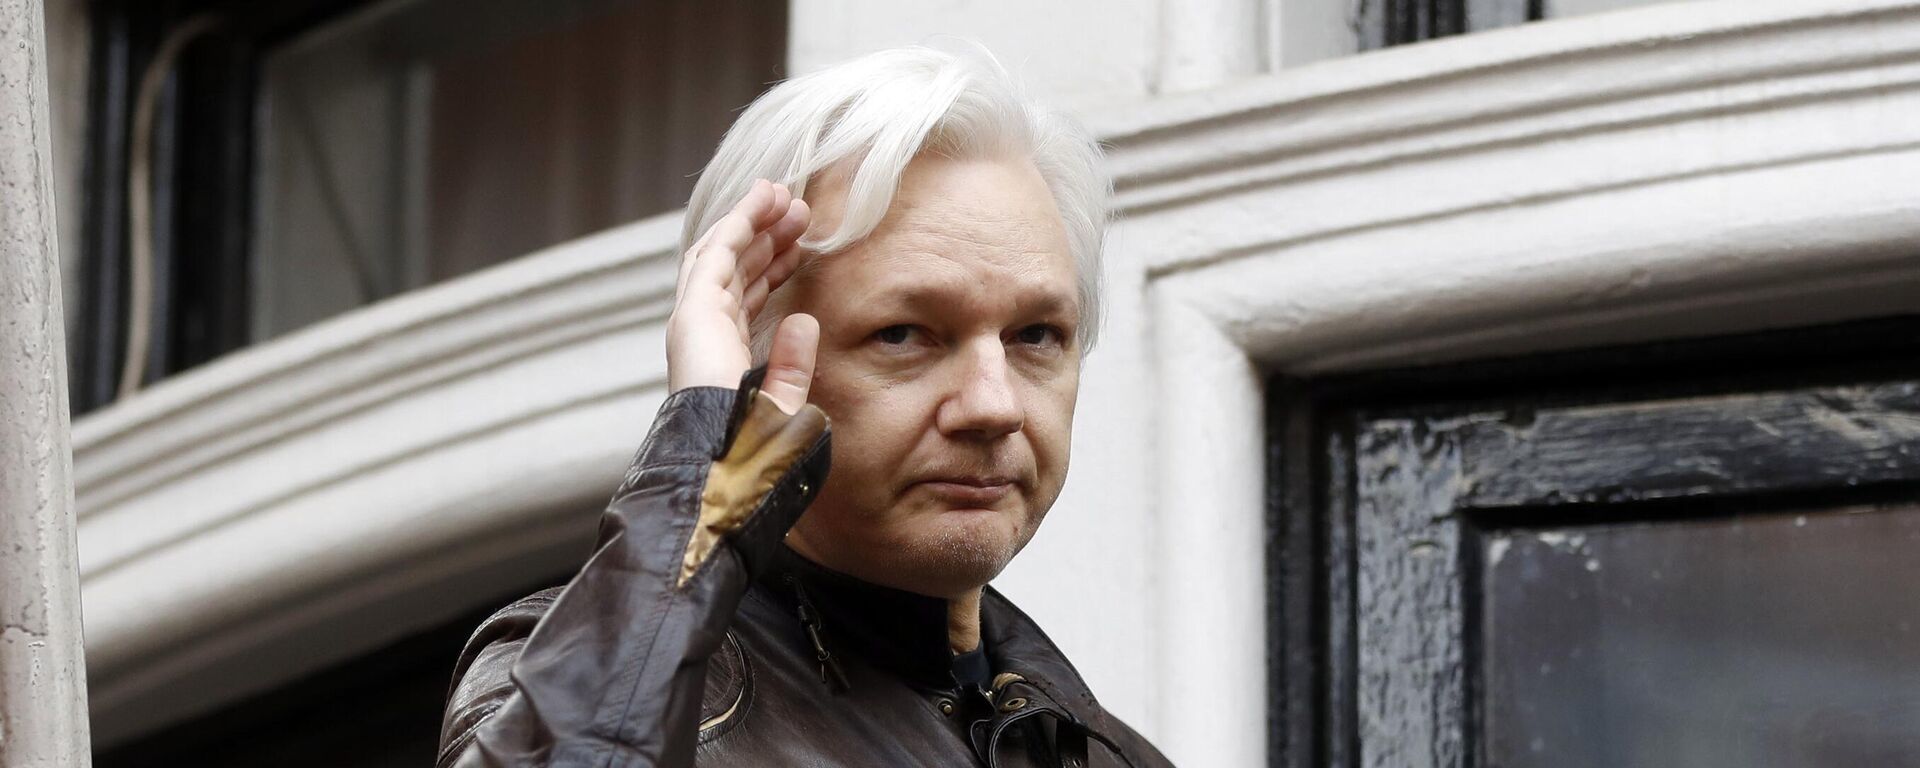 Julian Assange, el fundador de WikiLeaks (foto archivo) - Sputnik Mundo, 1920, 15.08.2022